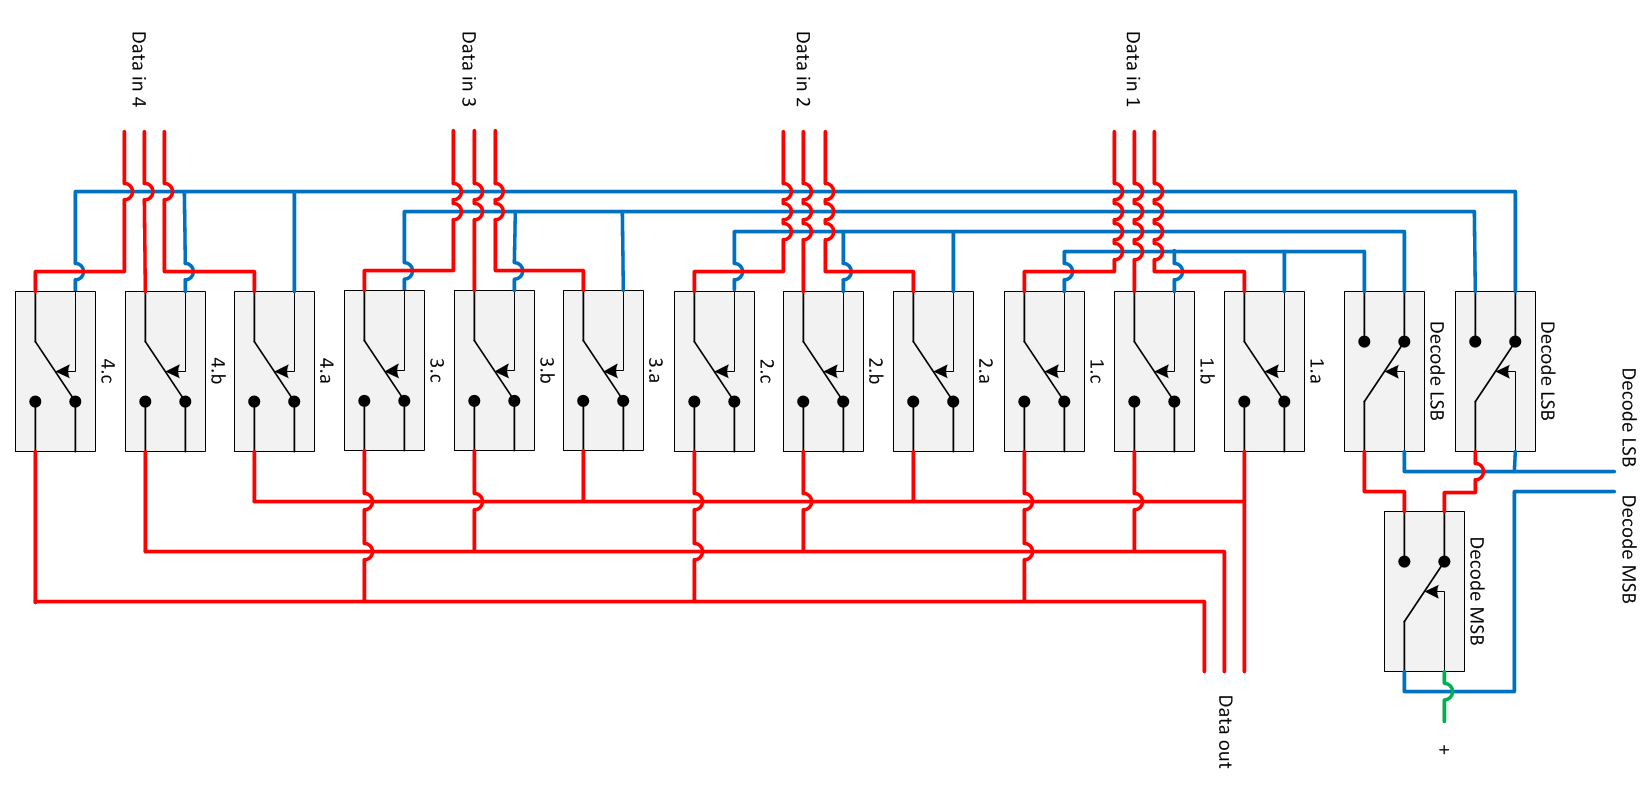 Relay logic multiplexer, Relais multiplexer, Relay multiplexer